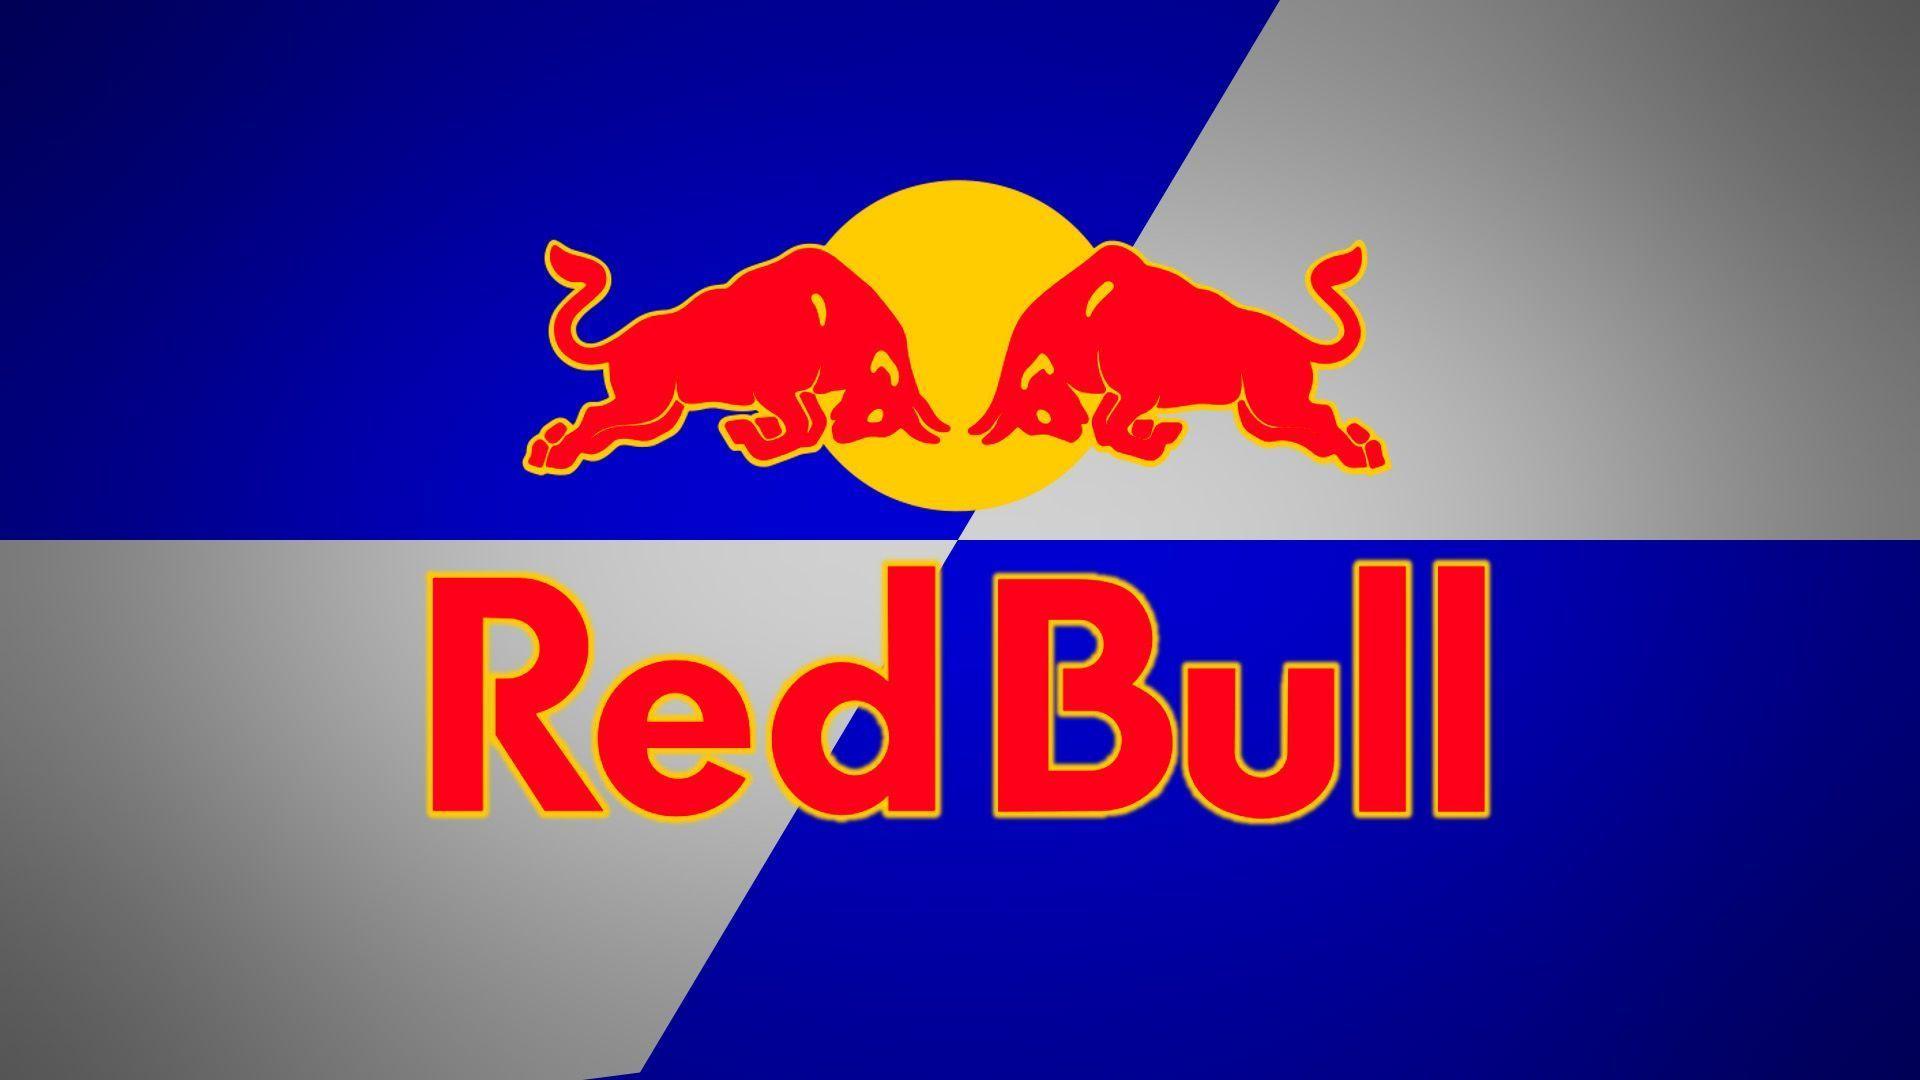 Red Bull Wallpapers – thế giới nghệ thuật đầy sức sống, ngập tràn năng lượng sẽ khiến bạn chao đảo. Hãy đón xem các hình ảnh đậm chất Red Bull, mang đến cho mọi người cảm hứng để vươn tới thành công.